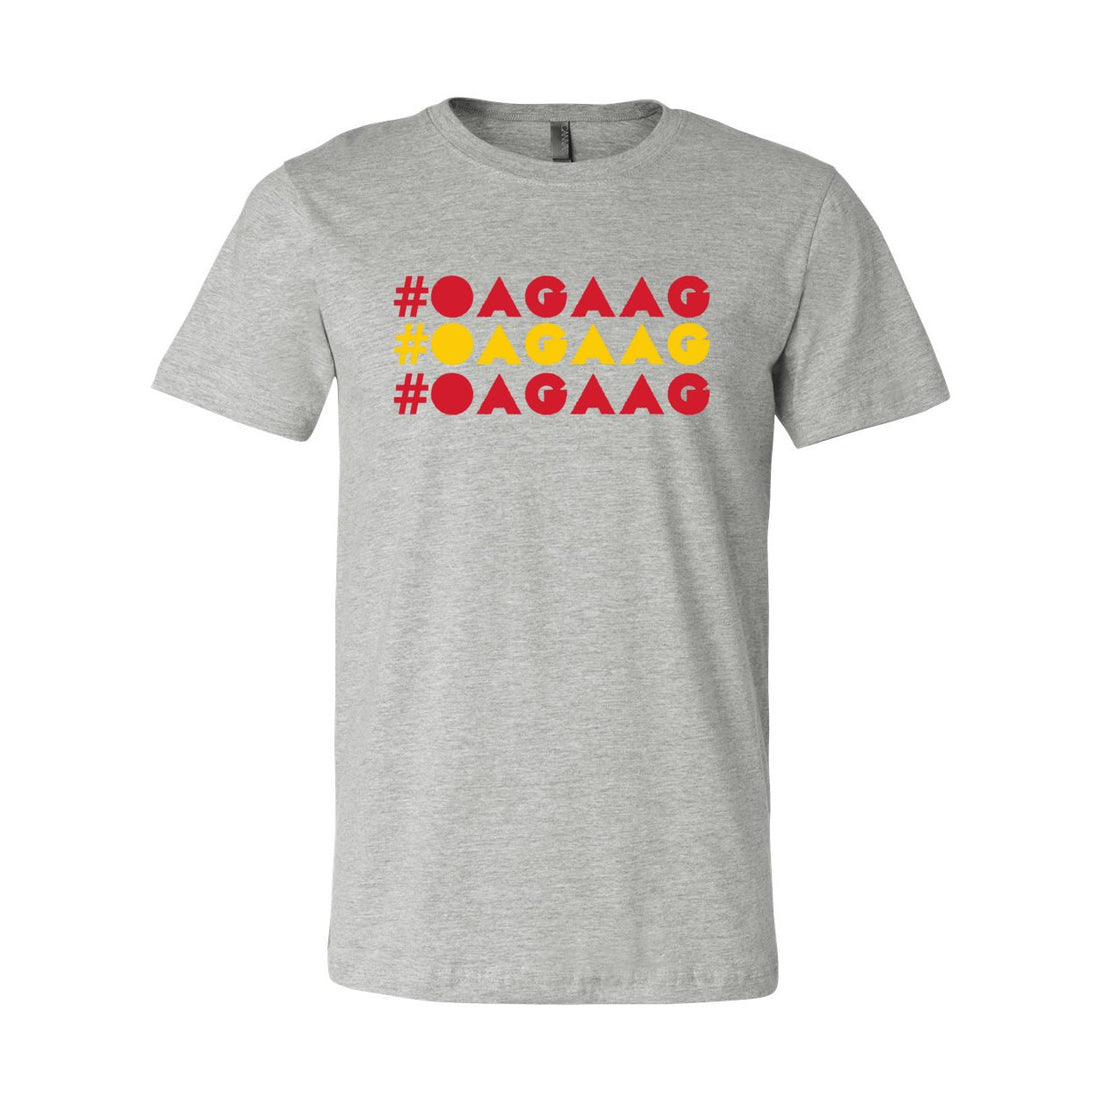 OAGAAG Short Sleeve Jersey Tee - T-Shirts - Positively Sassy - OAGAAG Short Sleeve Jersey Tee